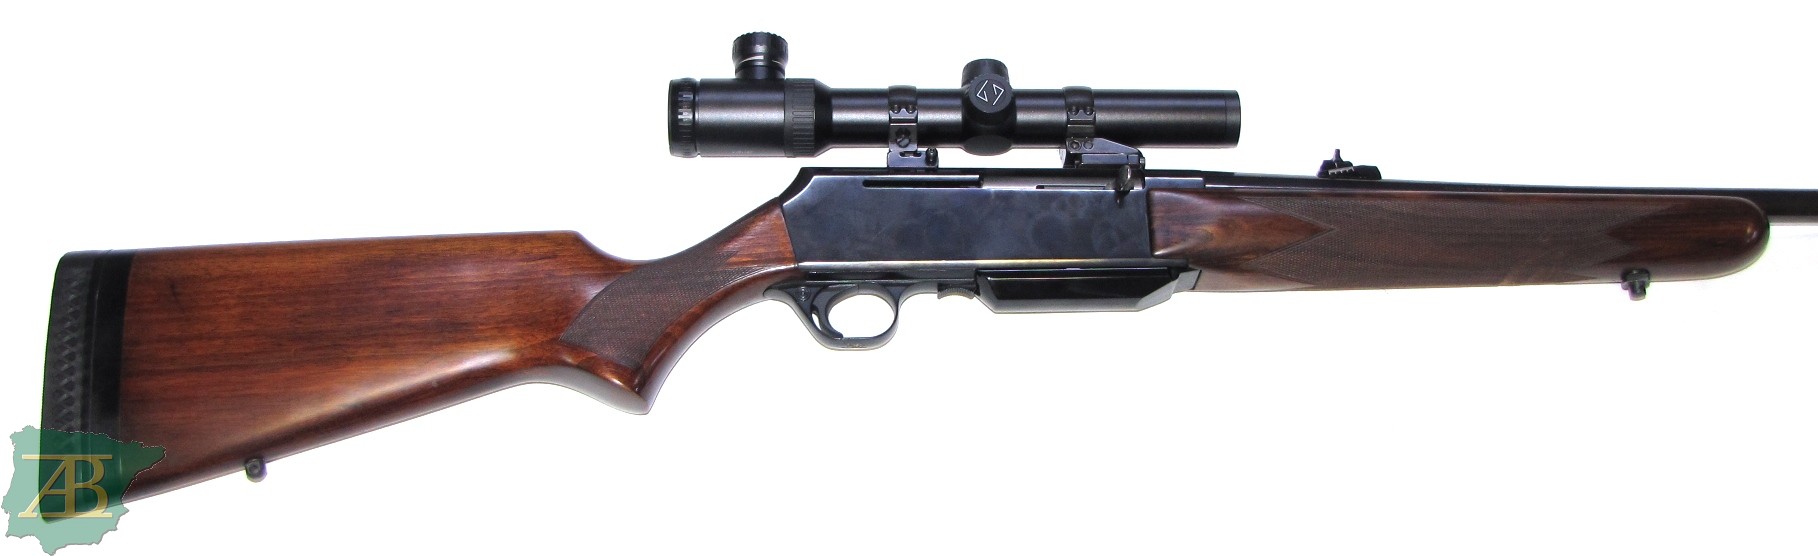 Rifle semiautomático de caza BROWNING MK I Ref 7858-armeriaiberica-2